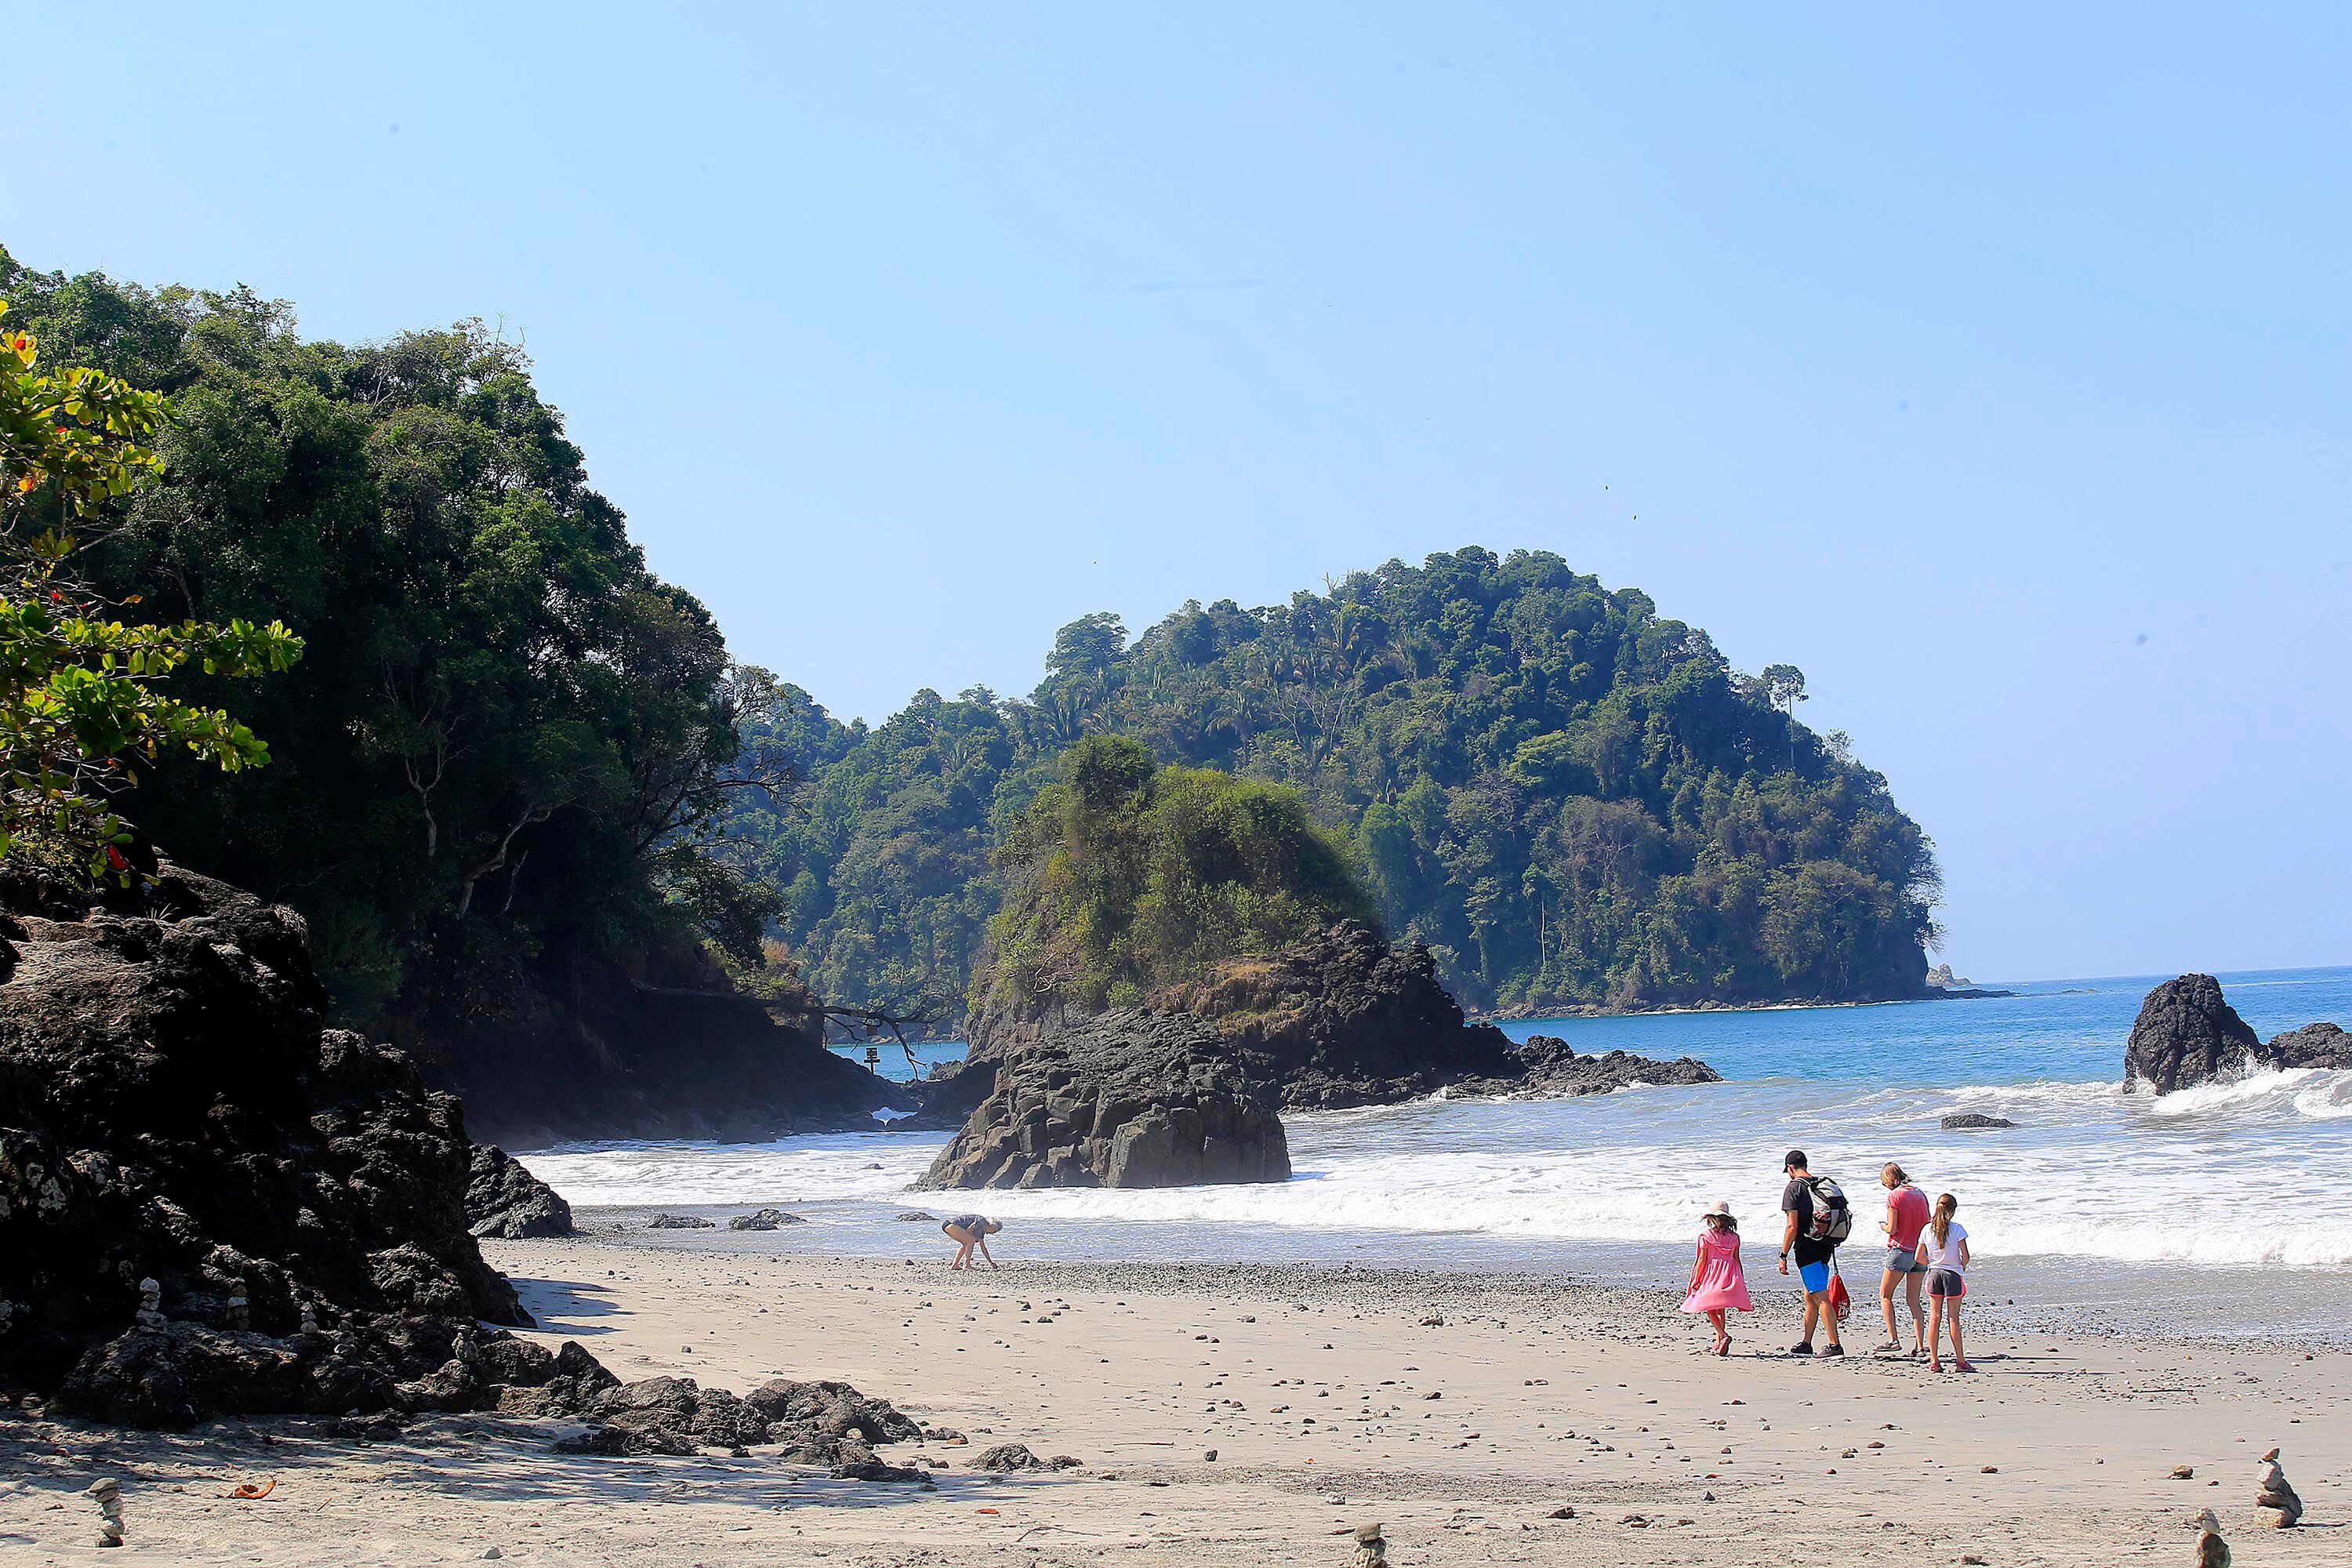 El Parque Nacional Manuel Antonio está situado en la costa del Pacífico del país. Uno de sus atractivos para los turistas son sus playas y la costa tropical.  